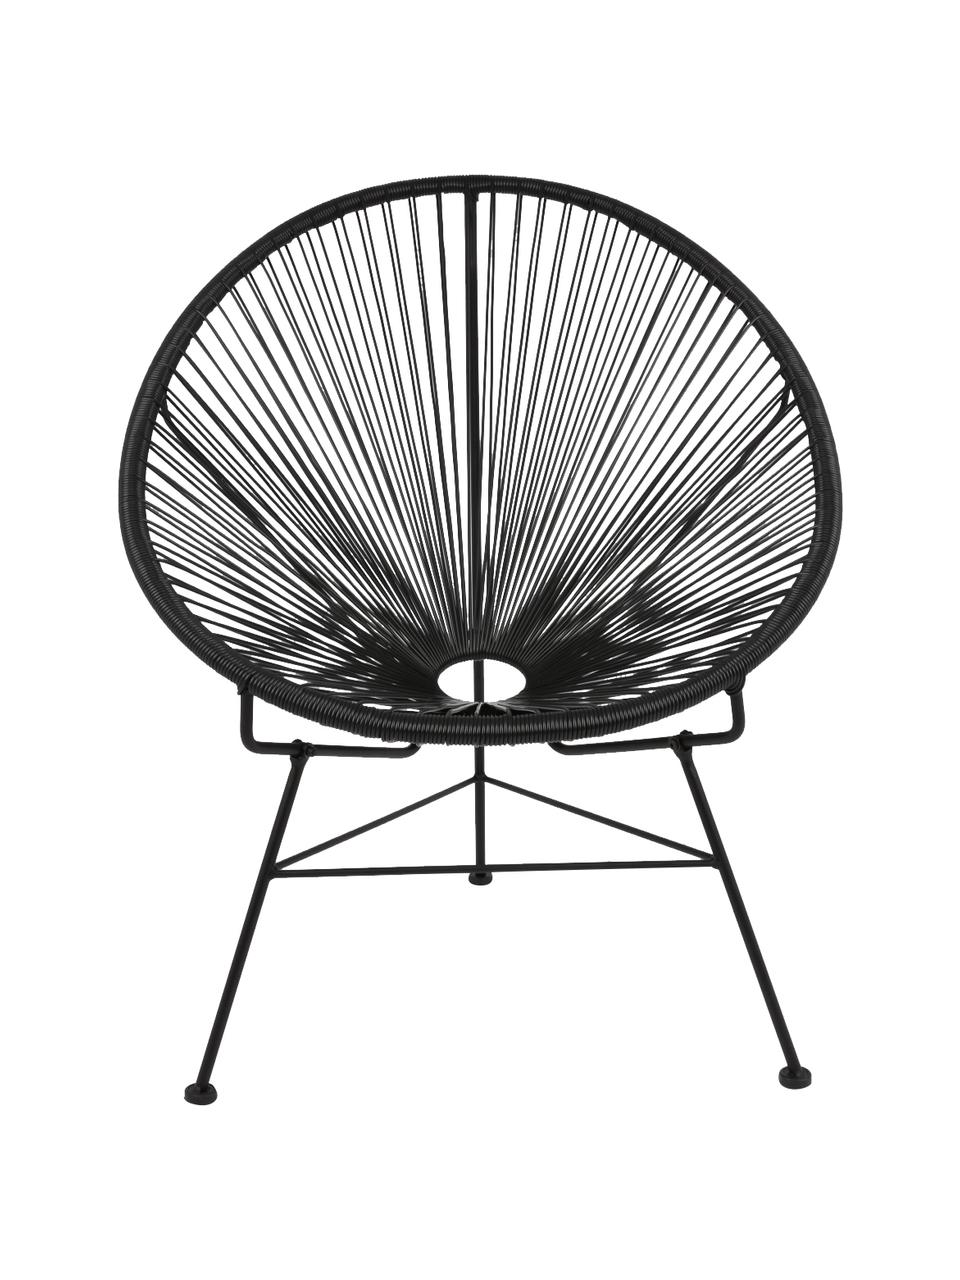 Loungesessel Bahia aus Kunststoff-Geflecht in Schwarz, Sitzfläche: Kunststoff, Gestell: Metall, pulverbeschichtet, Schwarz, B 81 x T 73 cm